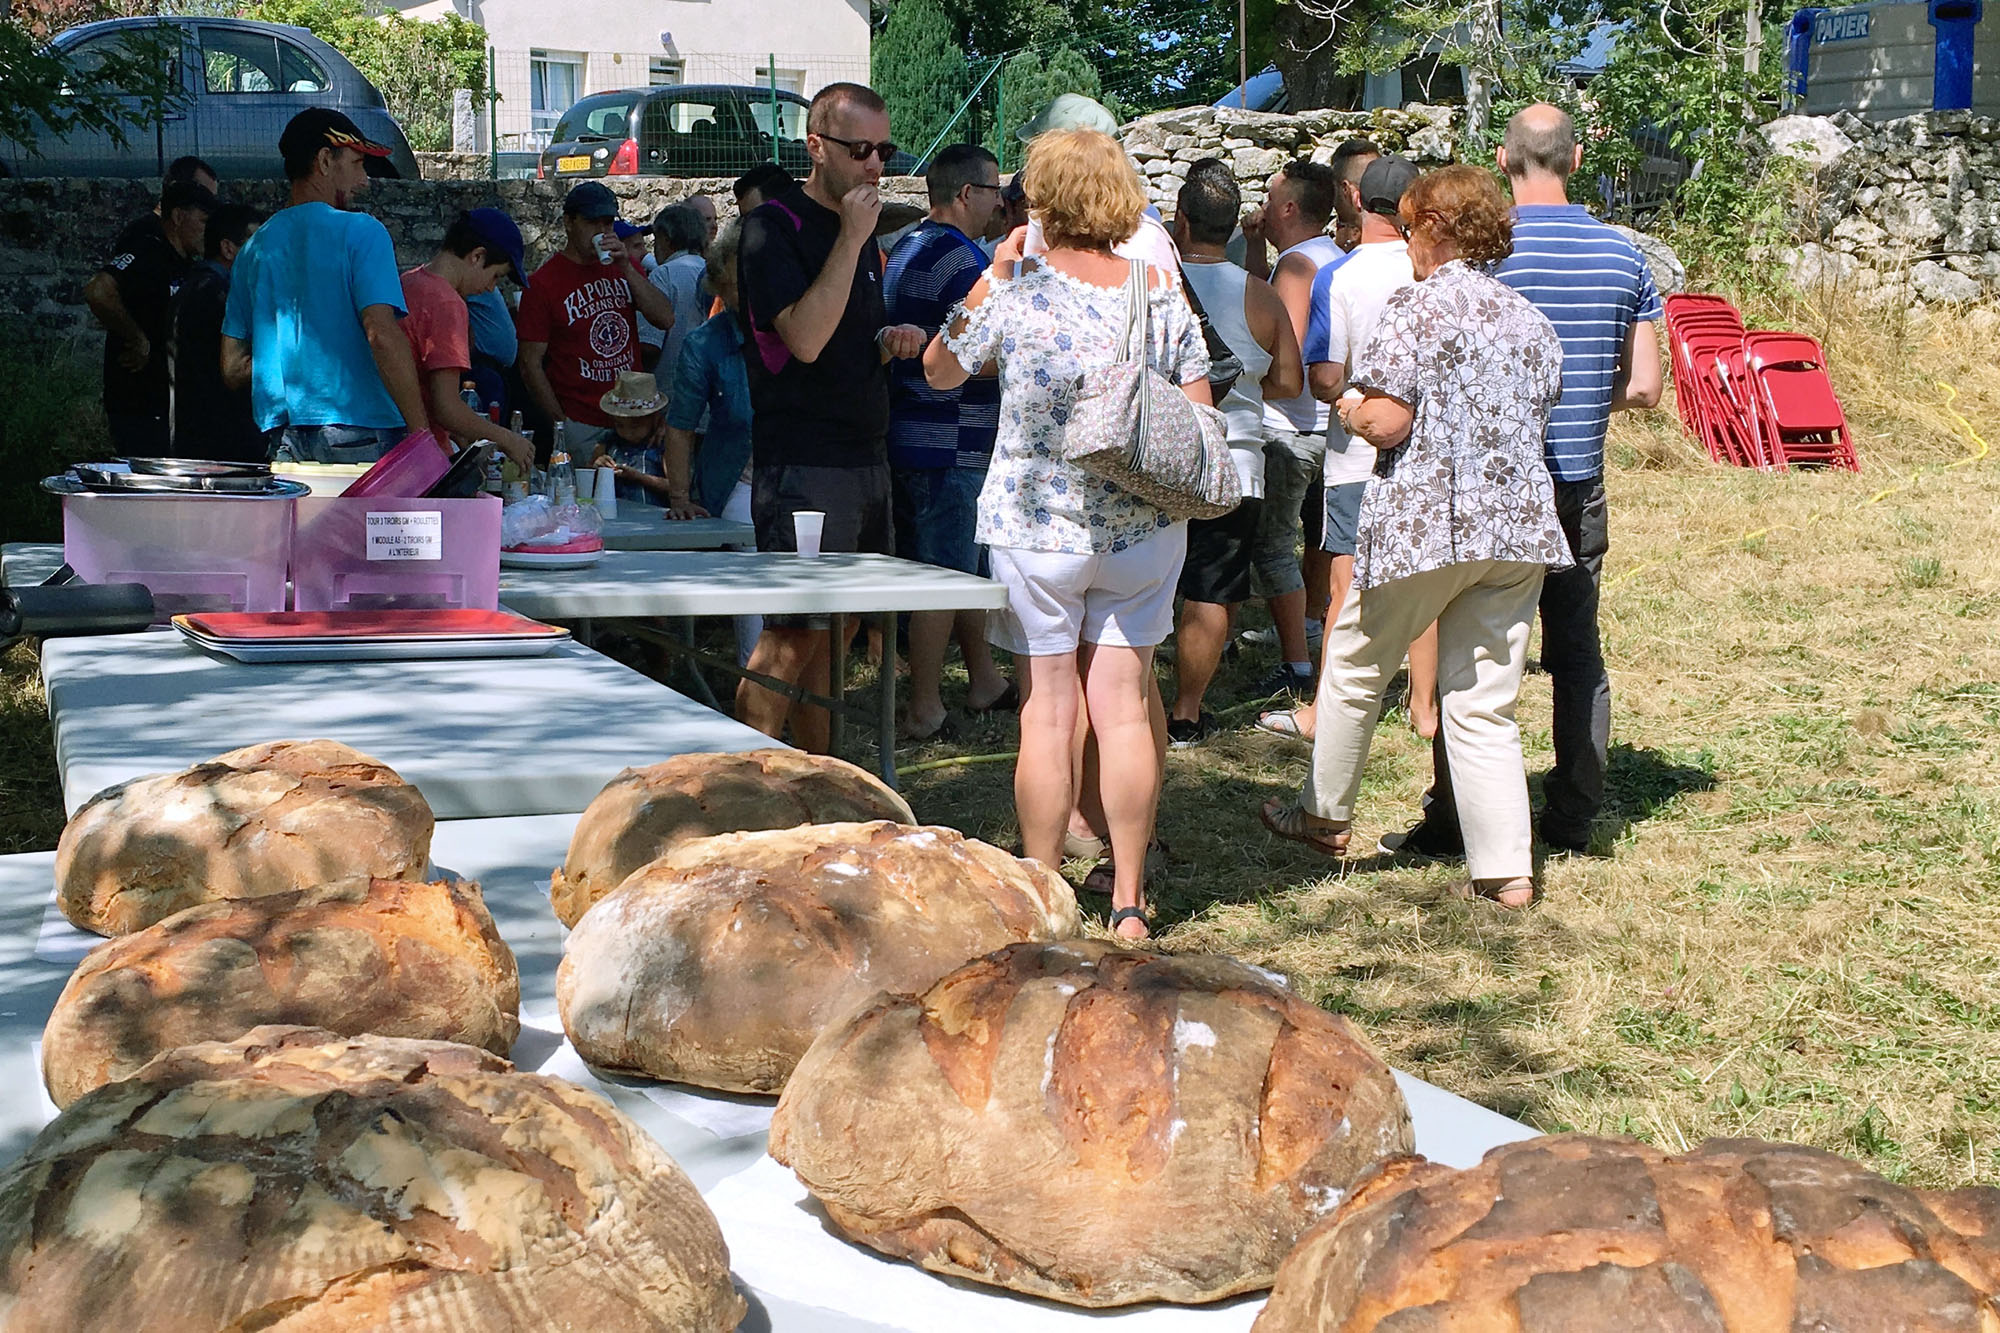 La ronde des miches…

de pain, c’est déroulé durant cette période estivale dans différents villages.